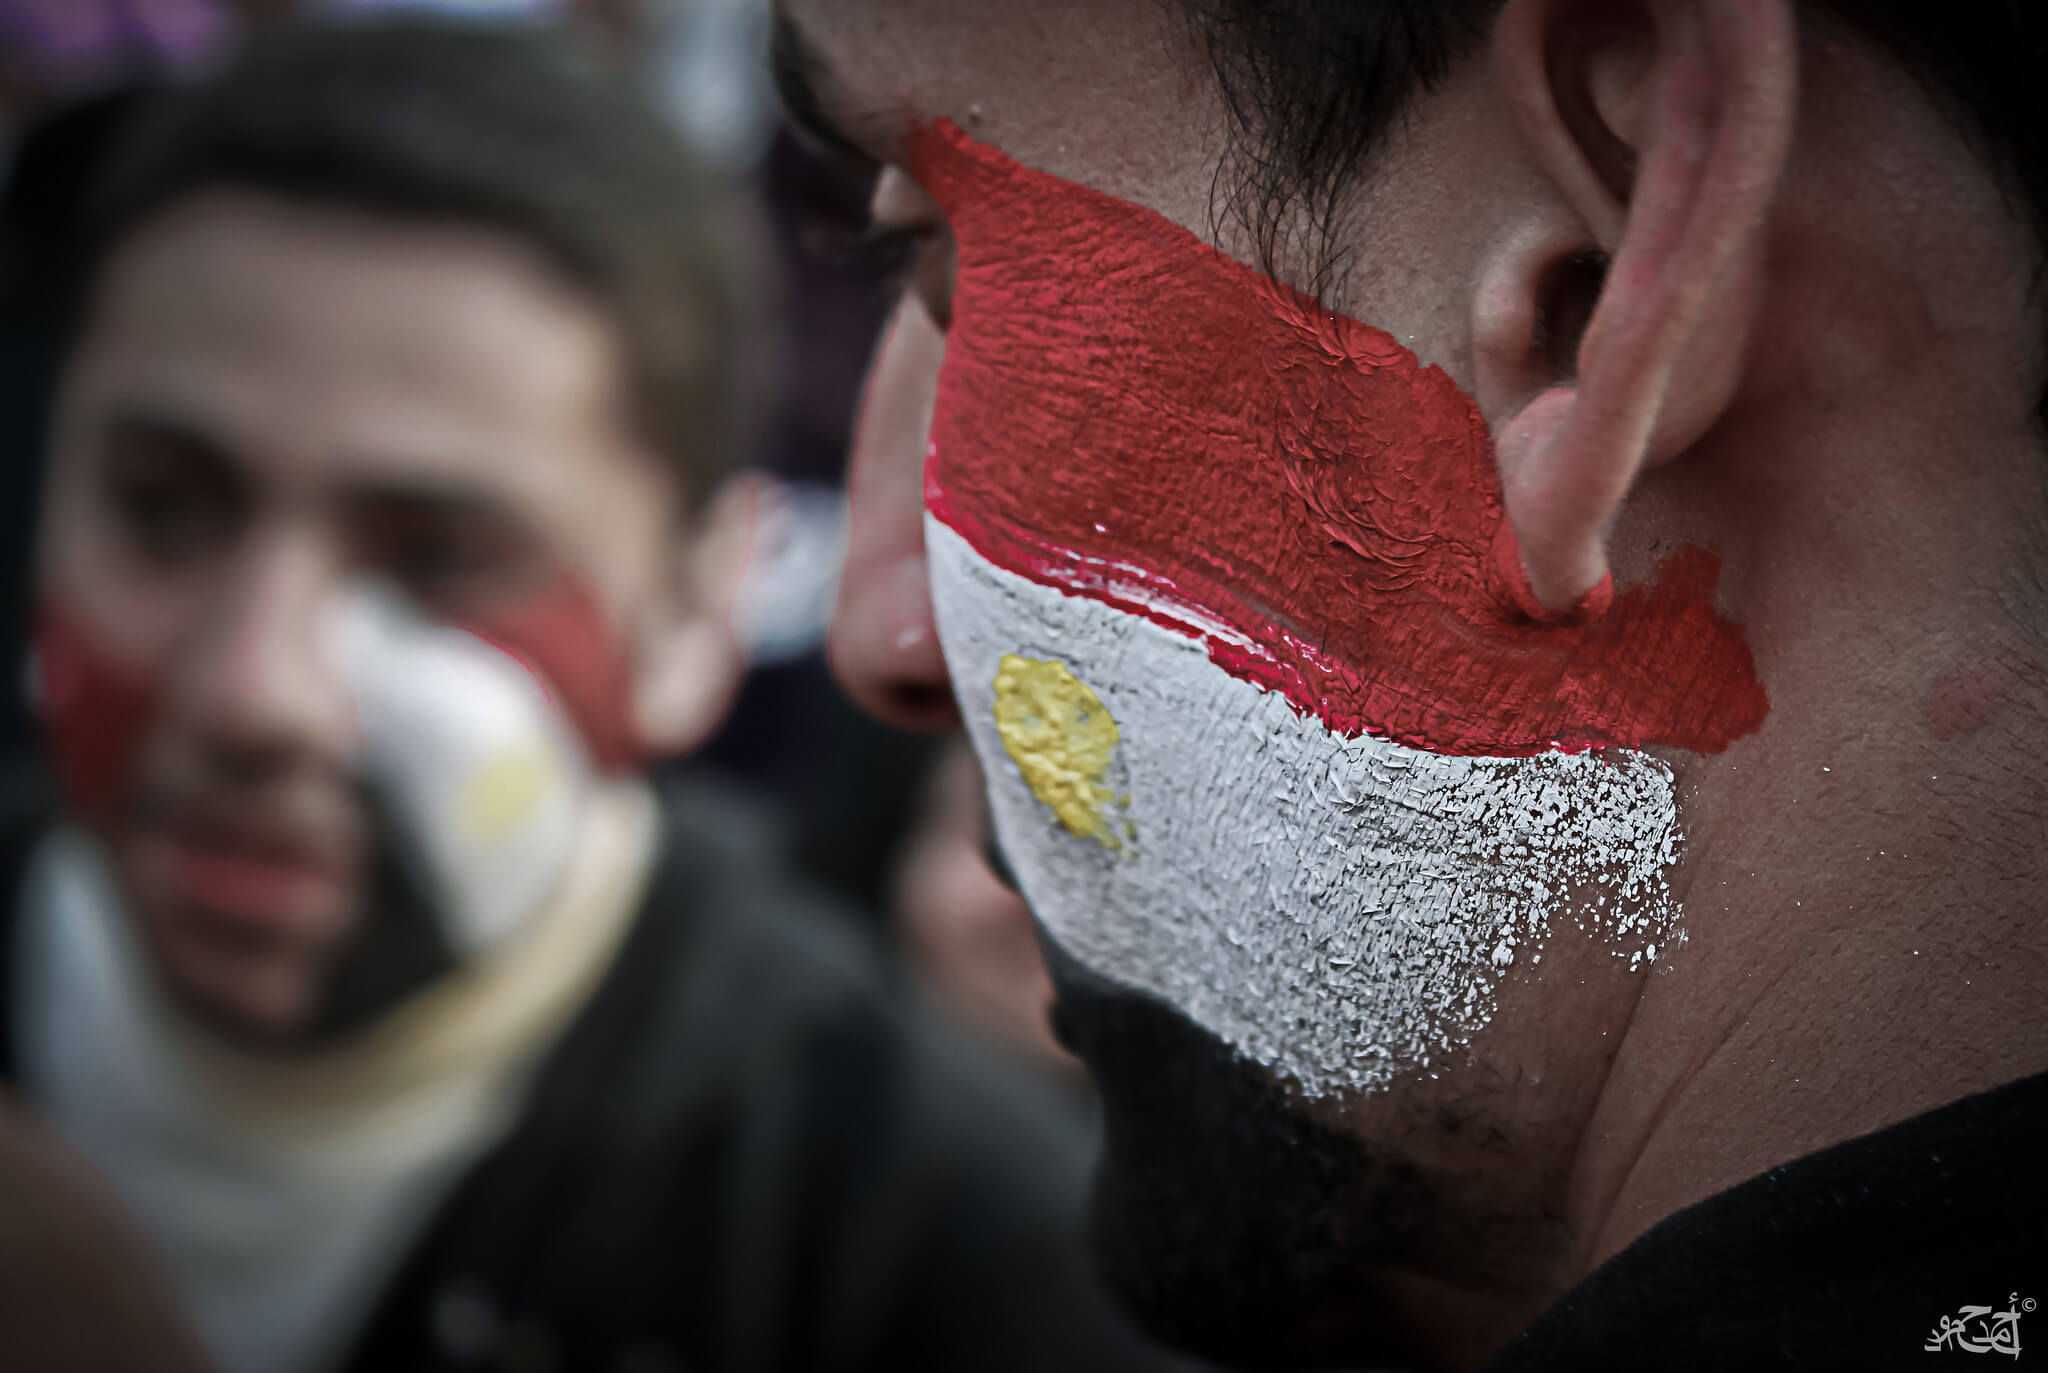 Hofstee-Egyptische vlag schmink op een demonstrant tijdens de Arabische Lente in Egypte, 1feb2011-Ahmad Hammoud-Flickr